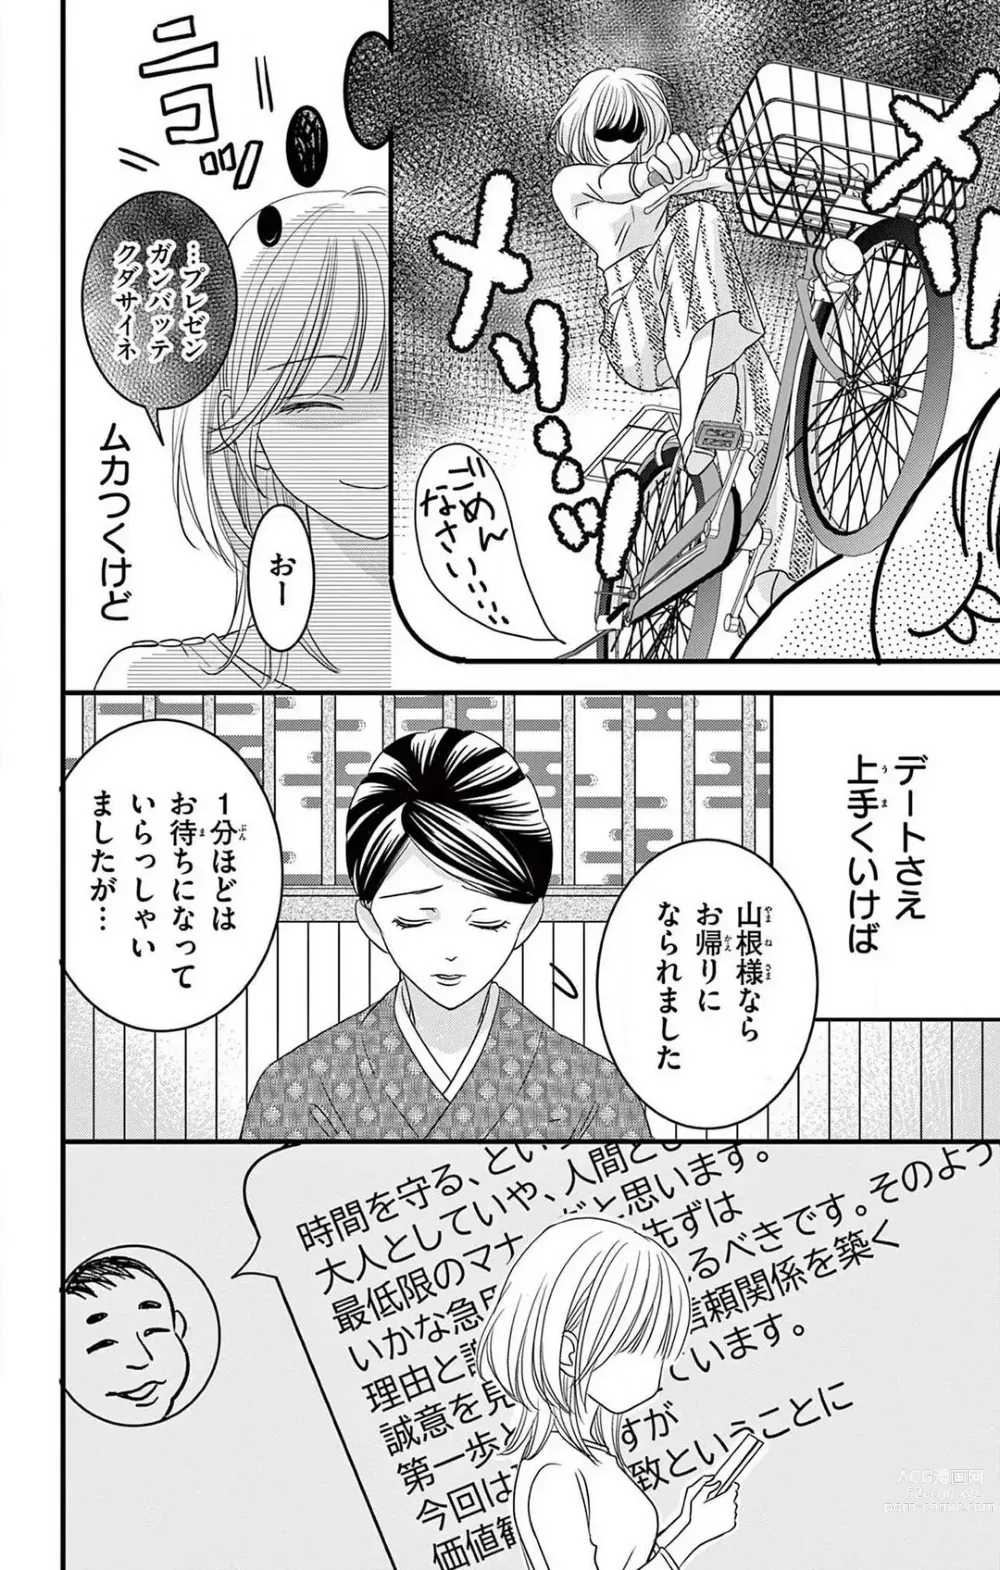 Page 8 of manga Kuzu wa Kuzu Demo Kao ga ii Kuzu 1-7